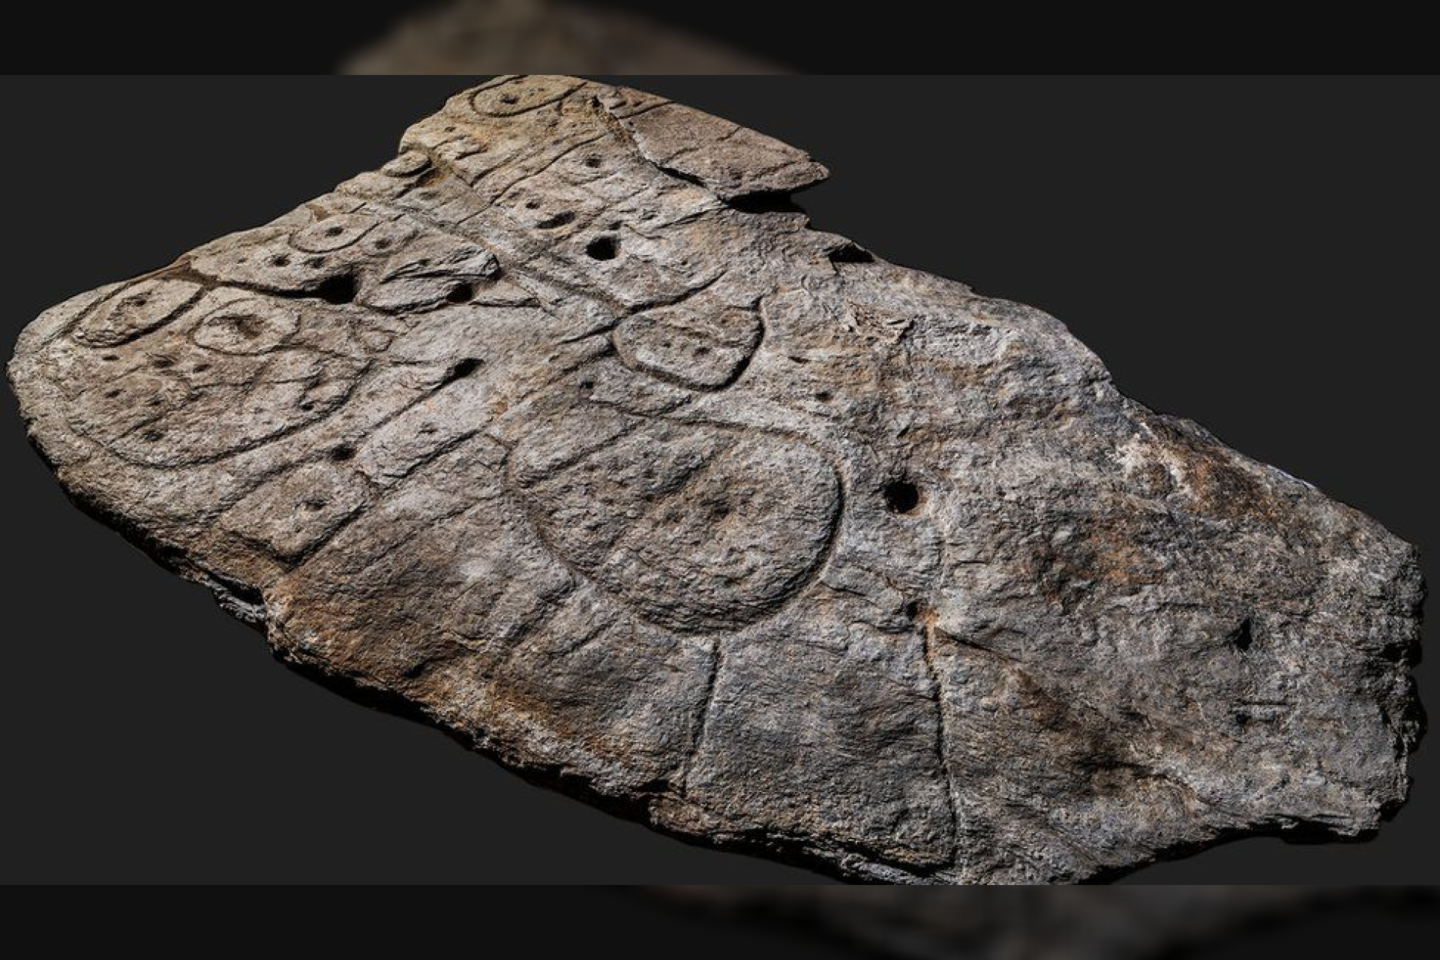  Tyrėjai teigia, kad iš naujo atrastas bronzos amžiaus laikų akmuo gali būti seniausias trimatis žemėlapis Europoje.<br> D. Gliksmano nuotr.